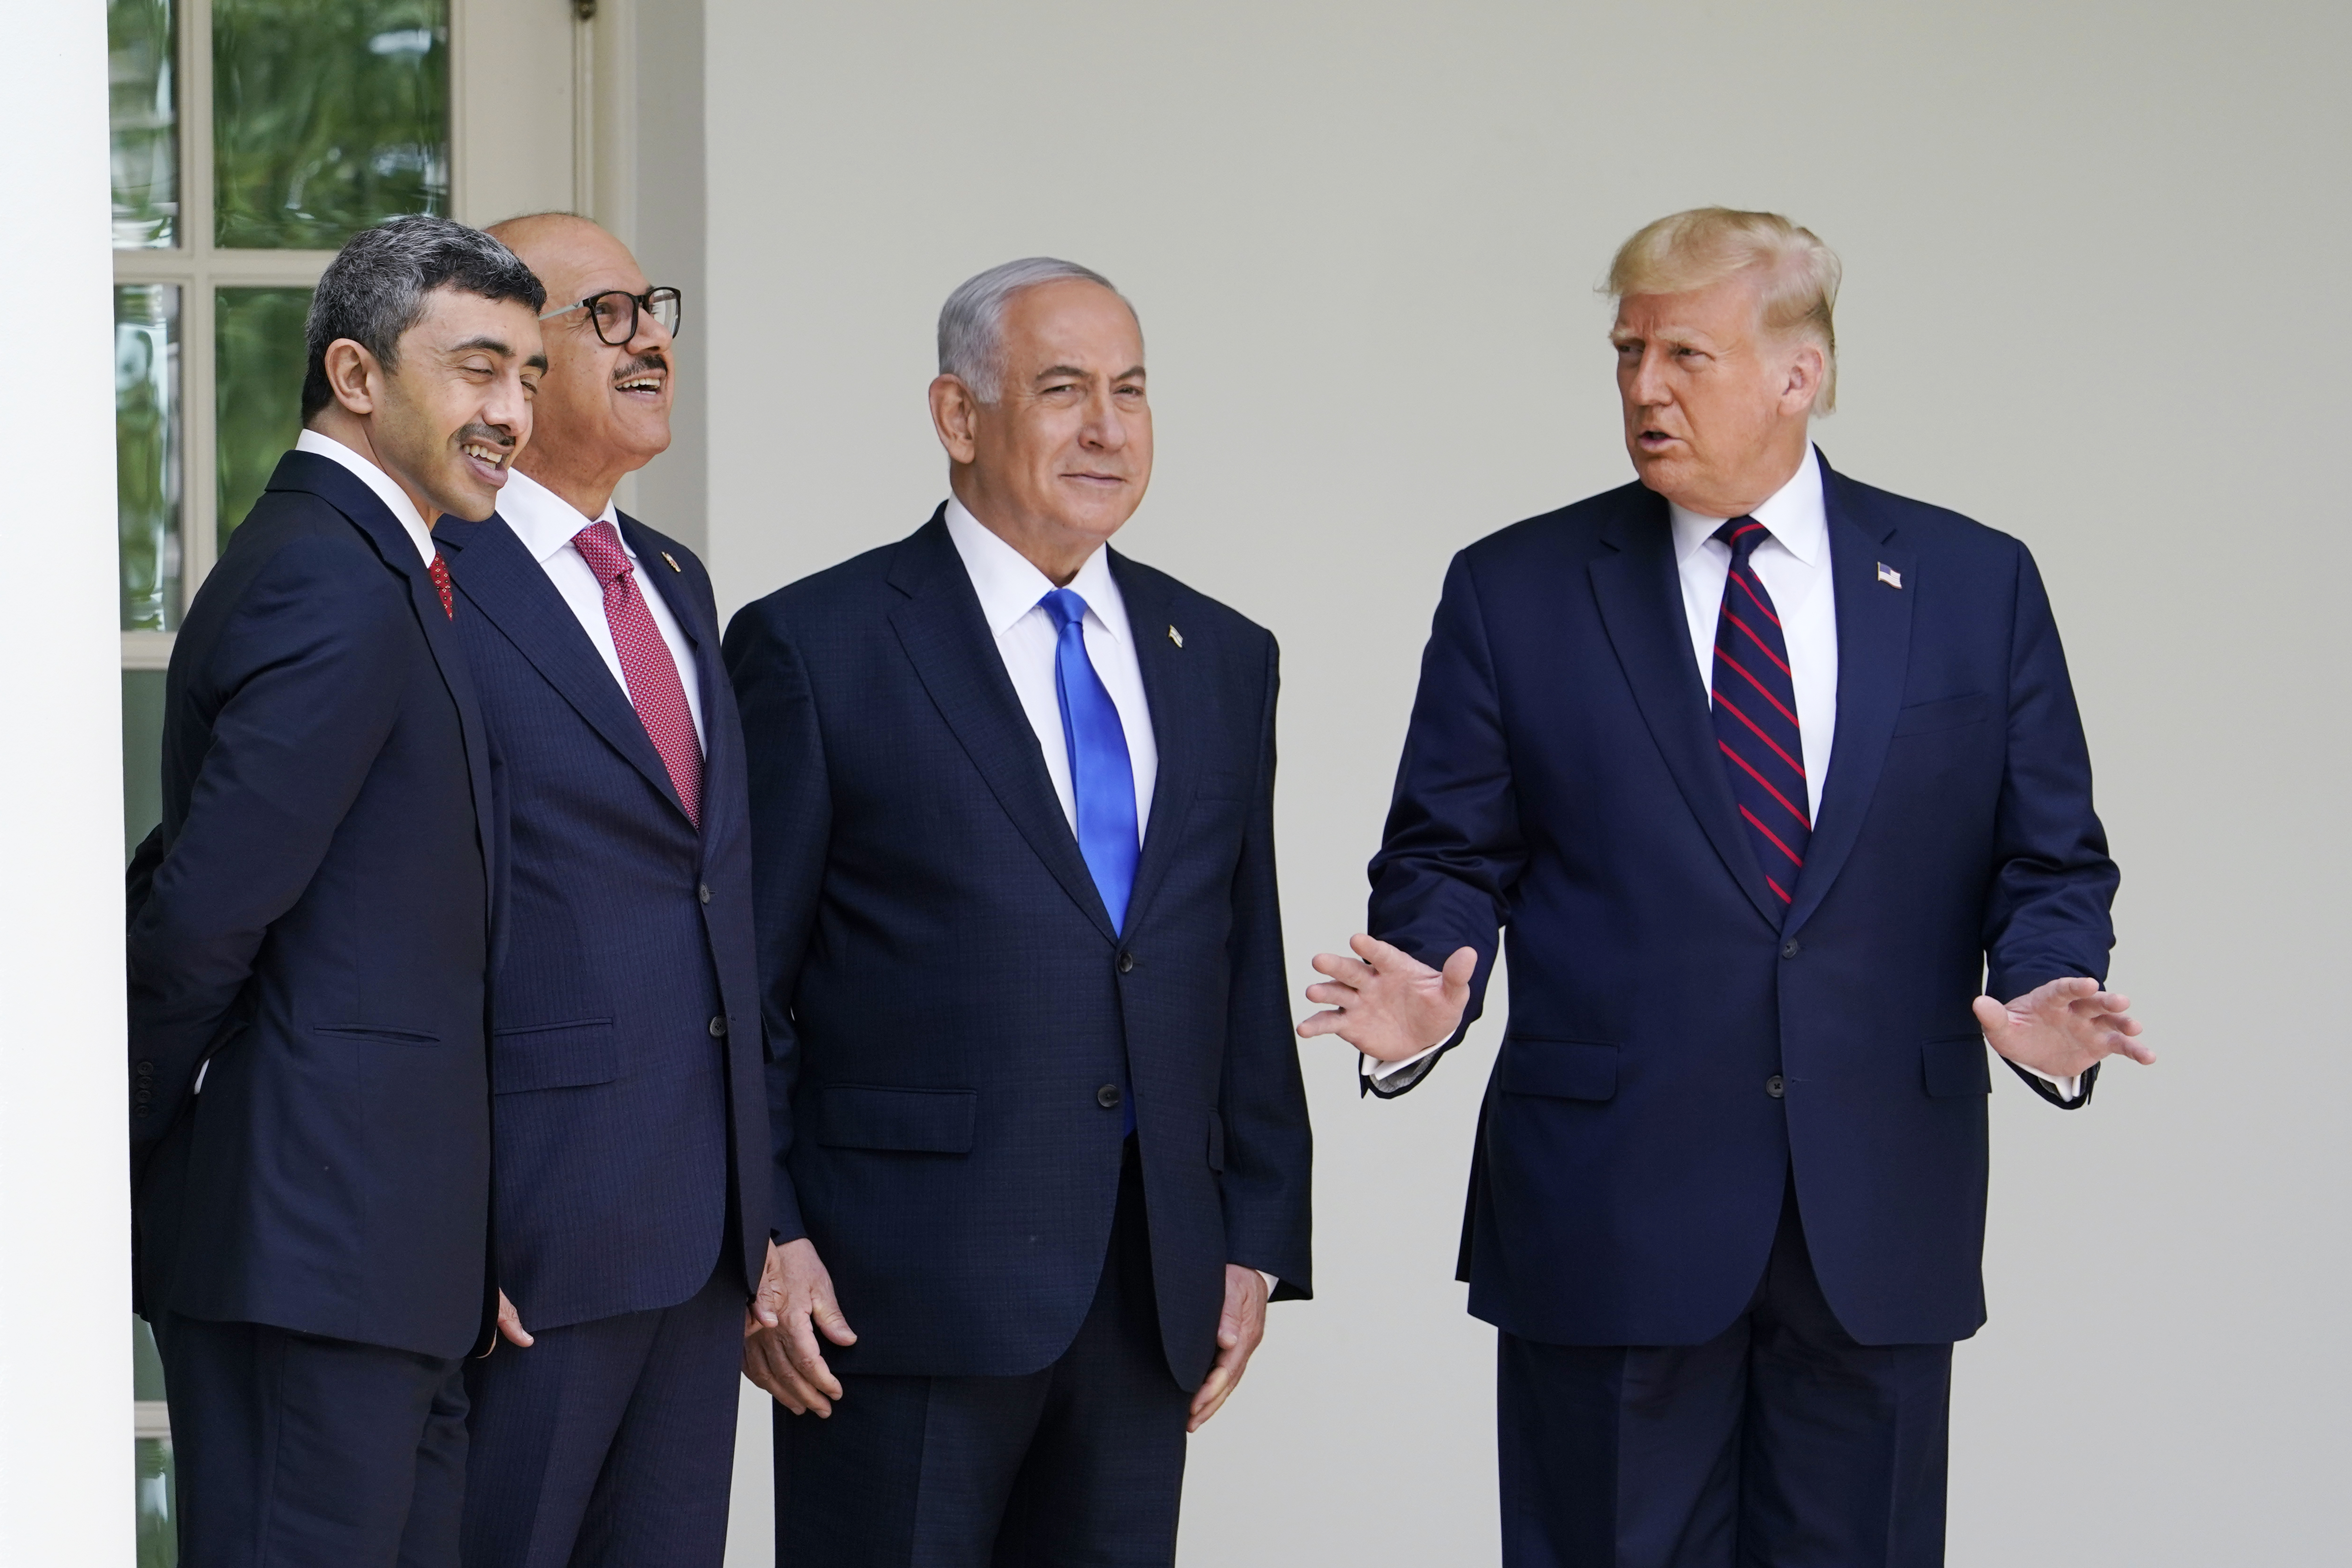  美國總統特朗普主持簽署儀式。巴勒斯坦總統阿巴斯同日表示，如果美國和以色列不承認巴勒斯坦人民的合法權利，中東地區不可能實現和平。 （美聯社）